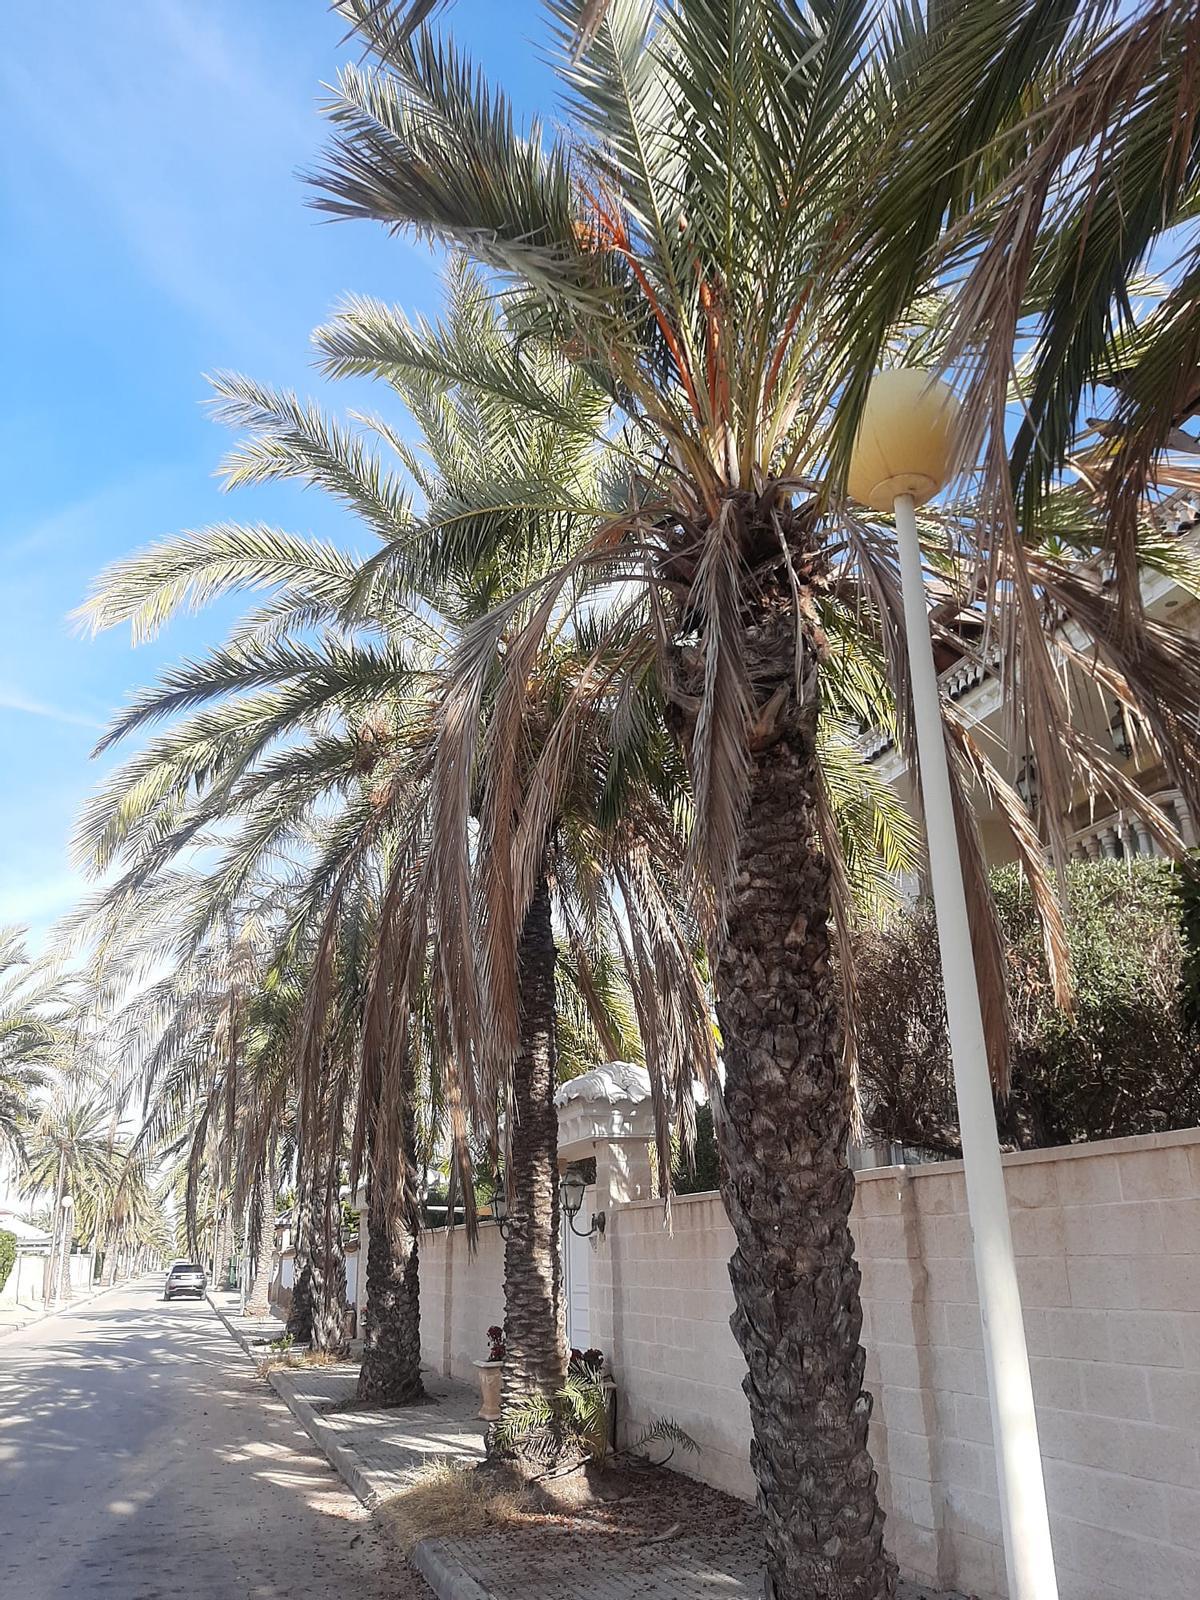 Una calle de Orihuela Costa con todas las palmeras sin podar, dejando esta penosa imagen.